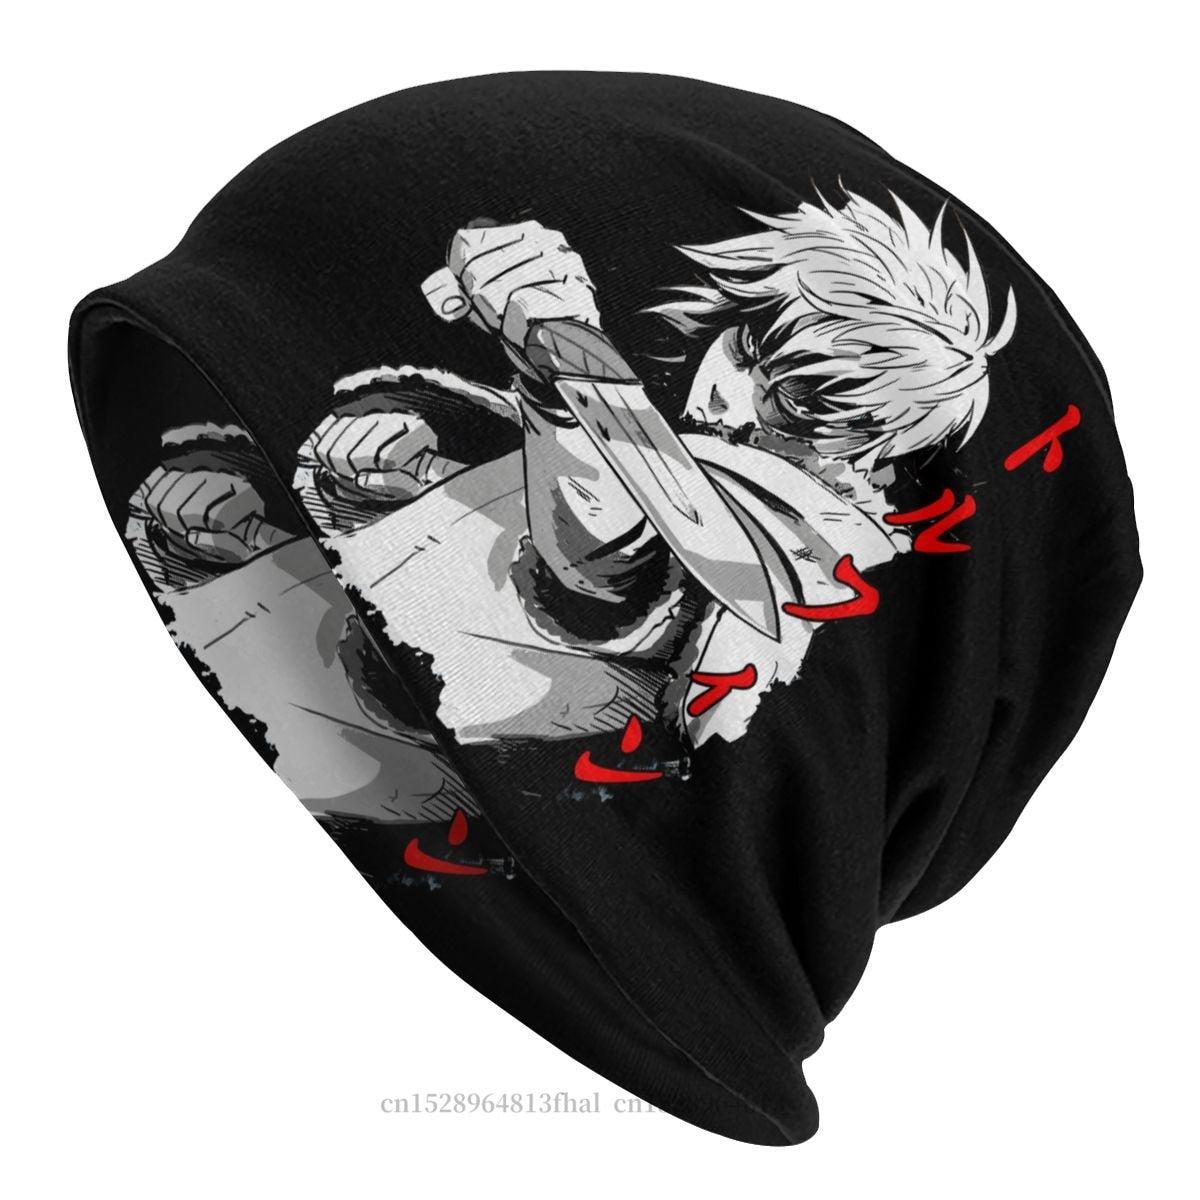 ⚔️Exclusive Anime Bonnet⚔️ Best Swordsman Shop our bonnets @ Funkulture.com  | Instagram